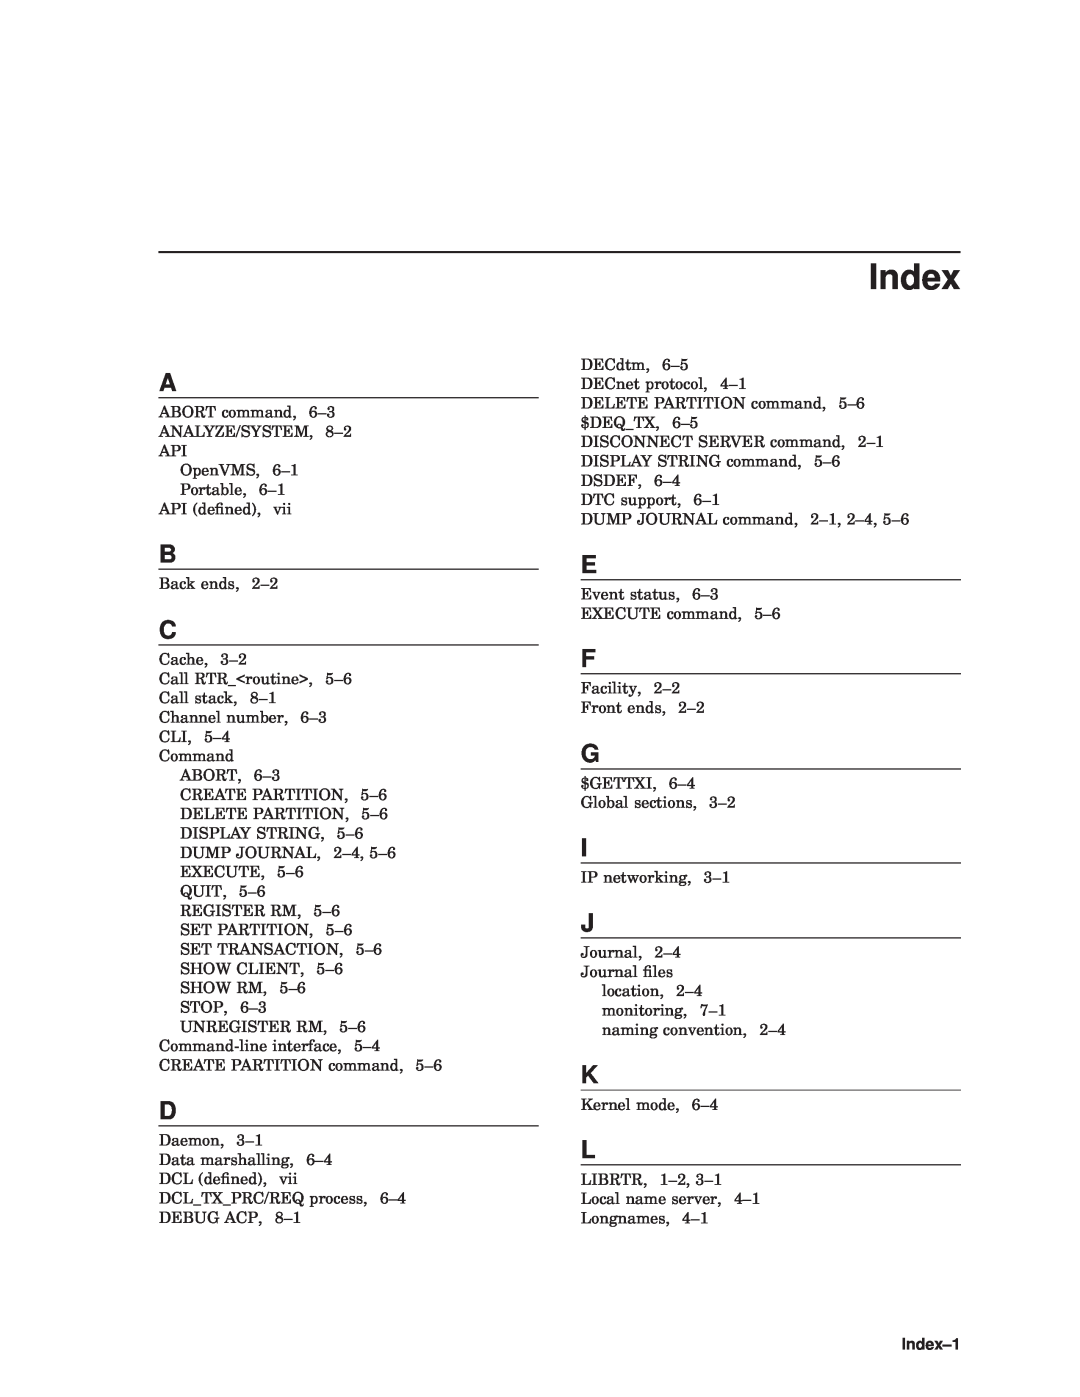 Compaq AAR-88LB-TE manual Index 